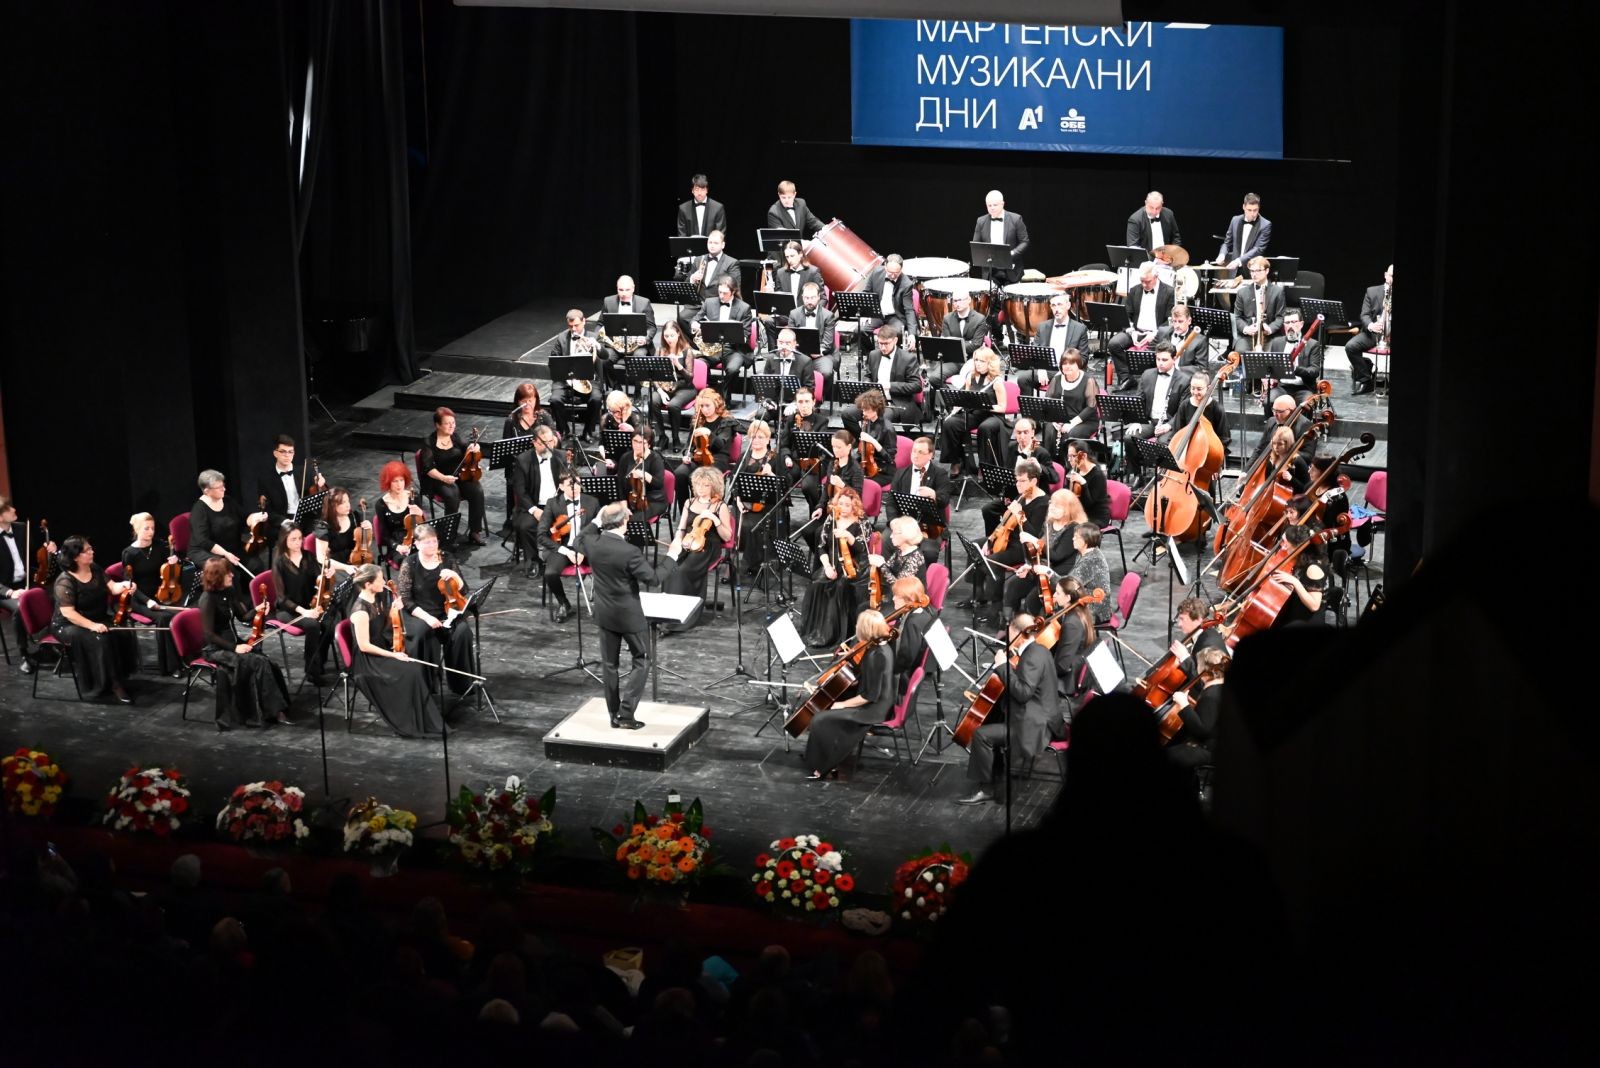 Кметът Пенчо Милков даде начало на 62-ото издание на „Мартенски музикални дни“